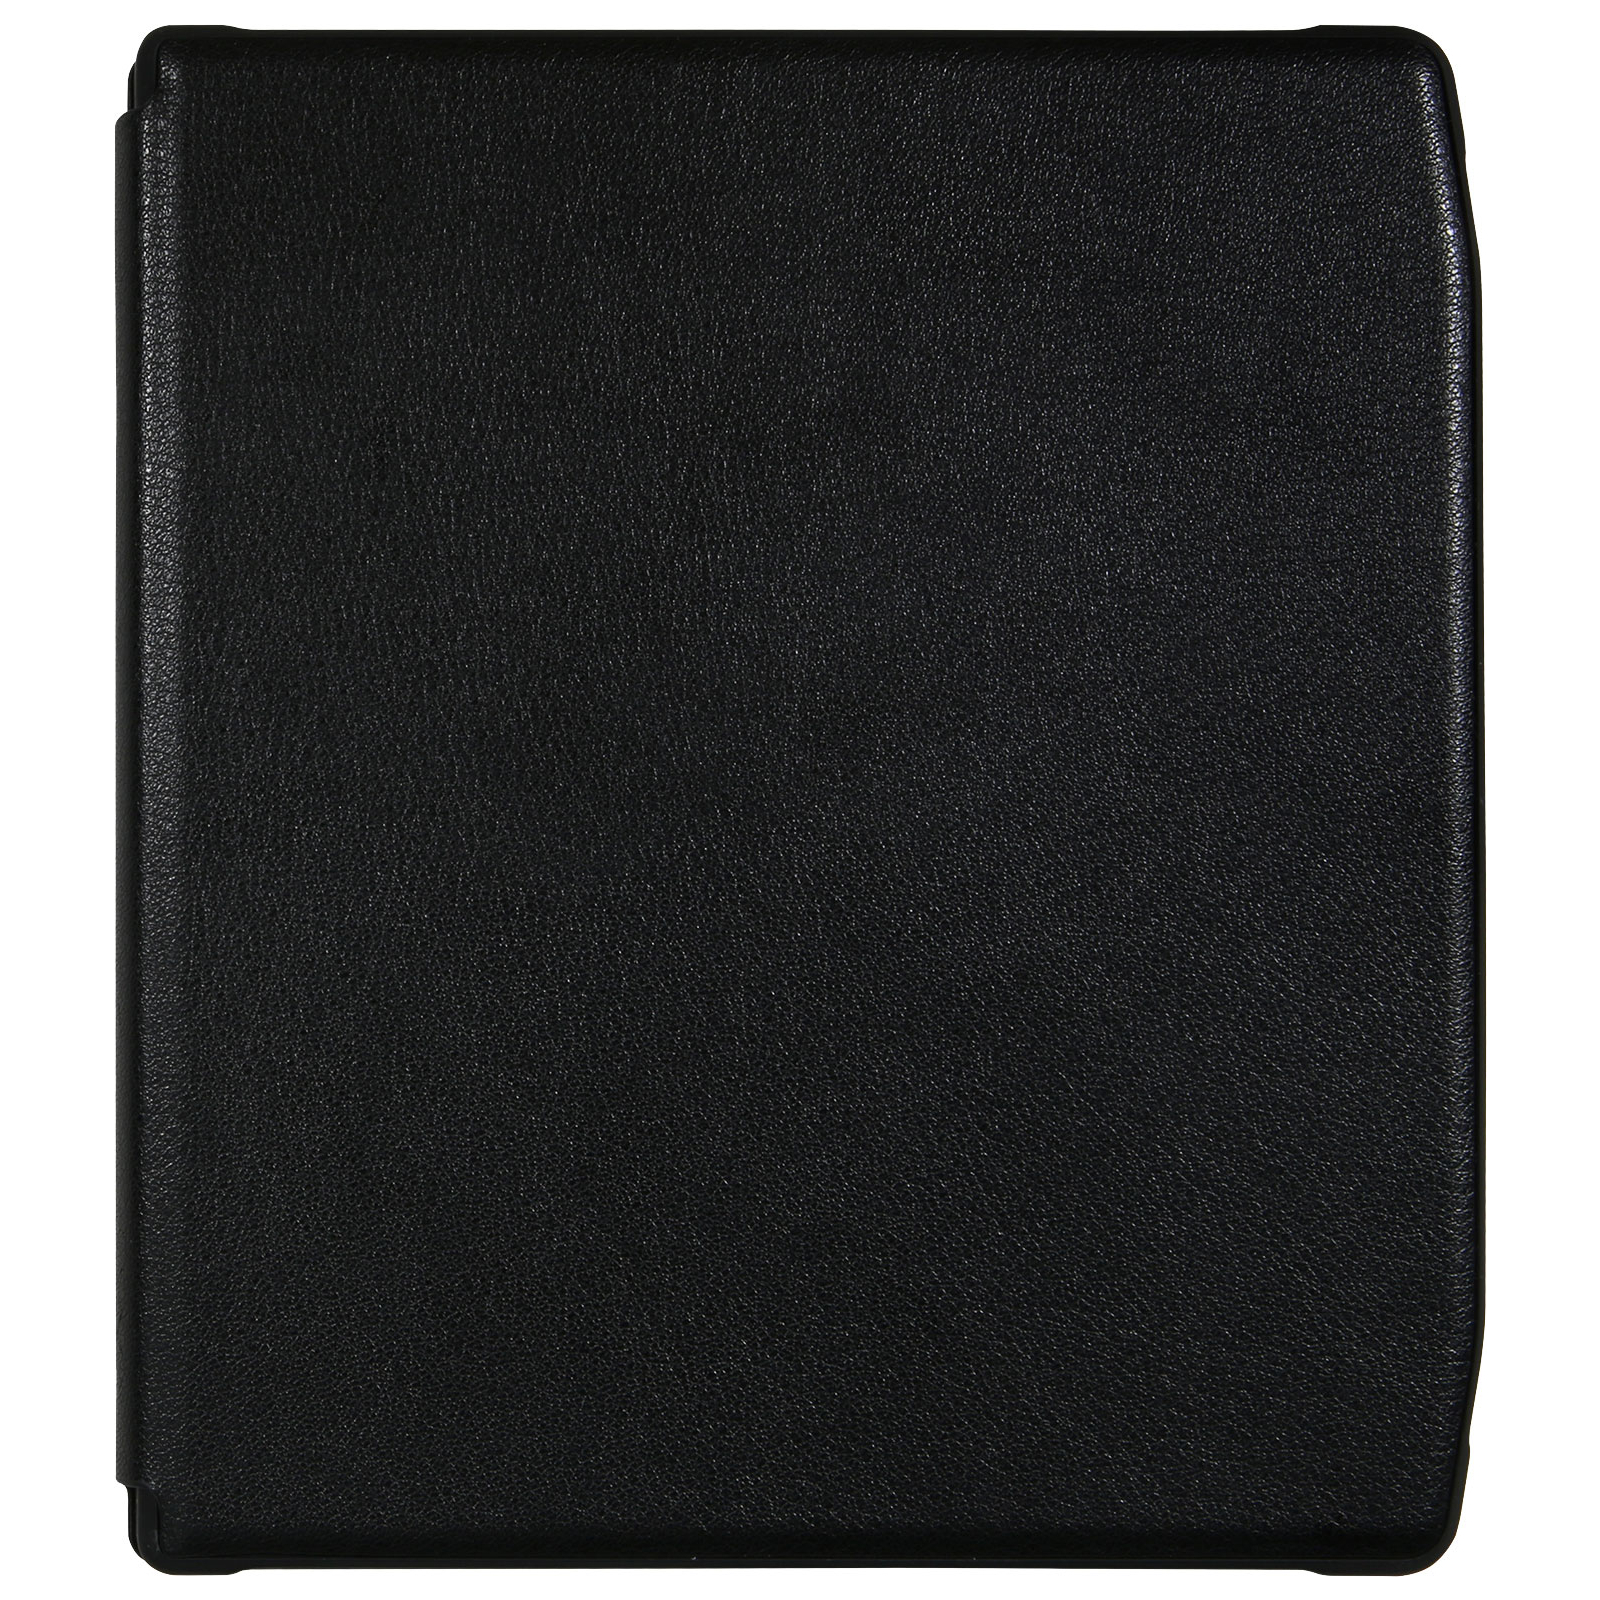 Чехол для электронной книги Pocketbook Era Shell Cover black (HN-SL-PU-700-BK-WW) изображение 2